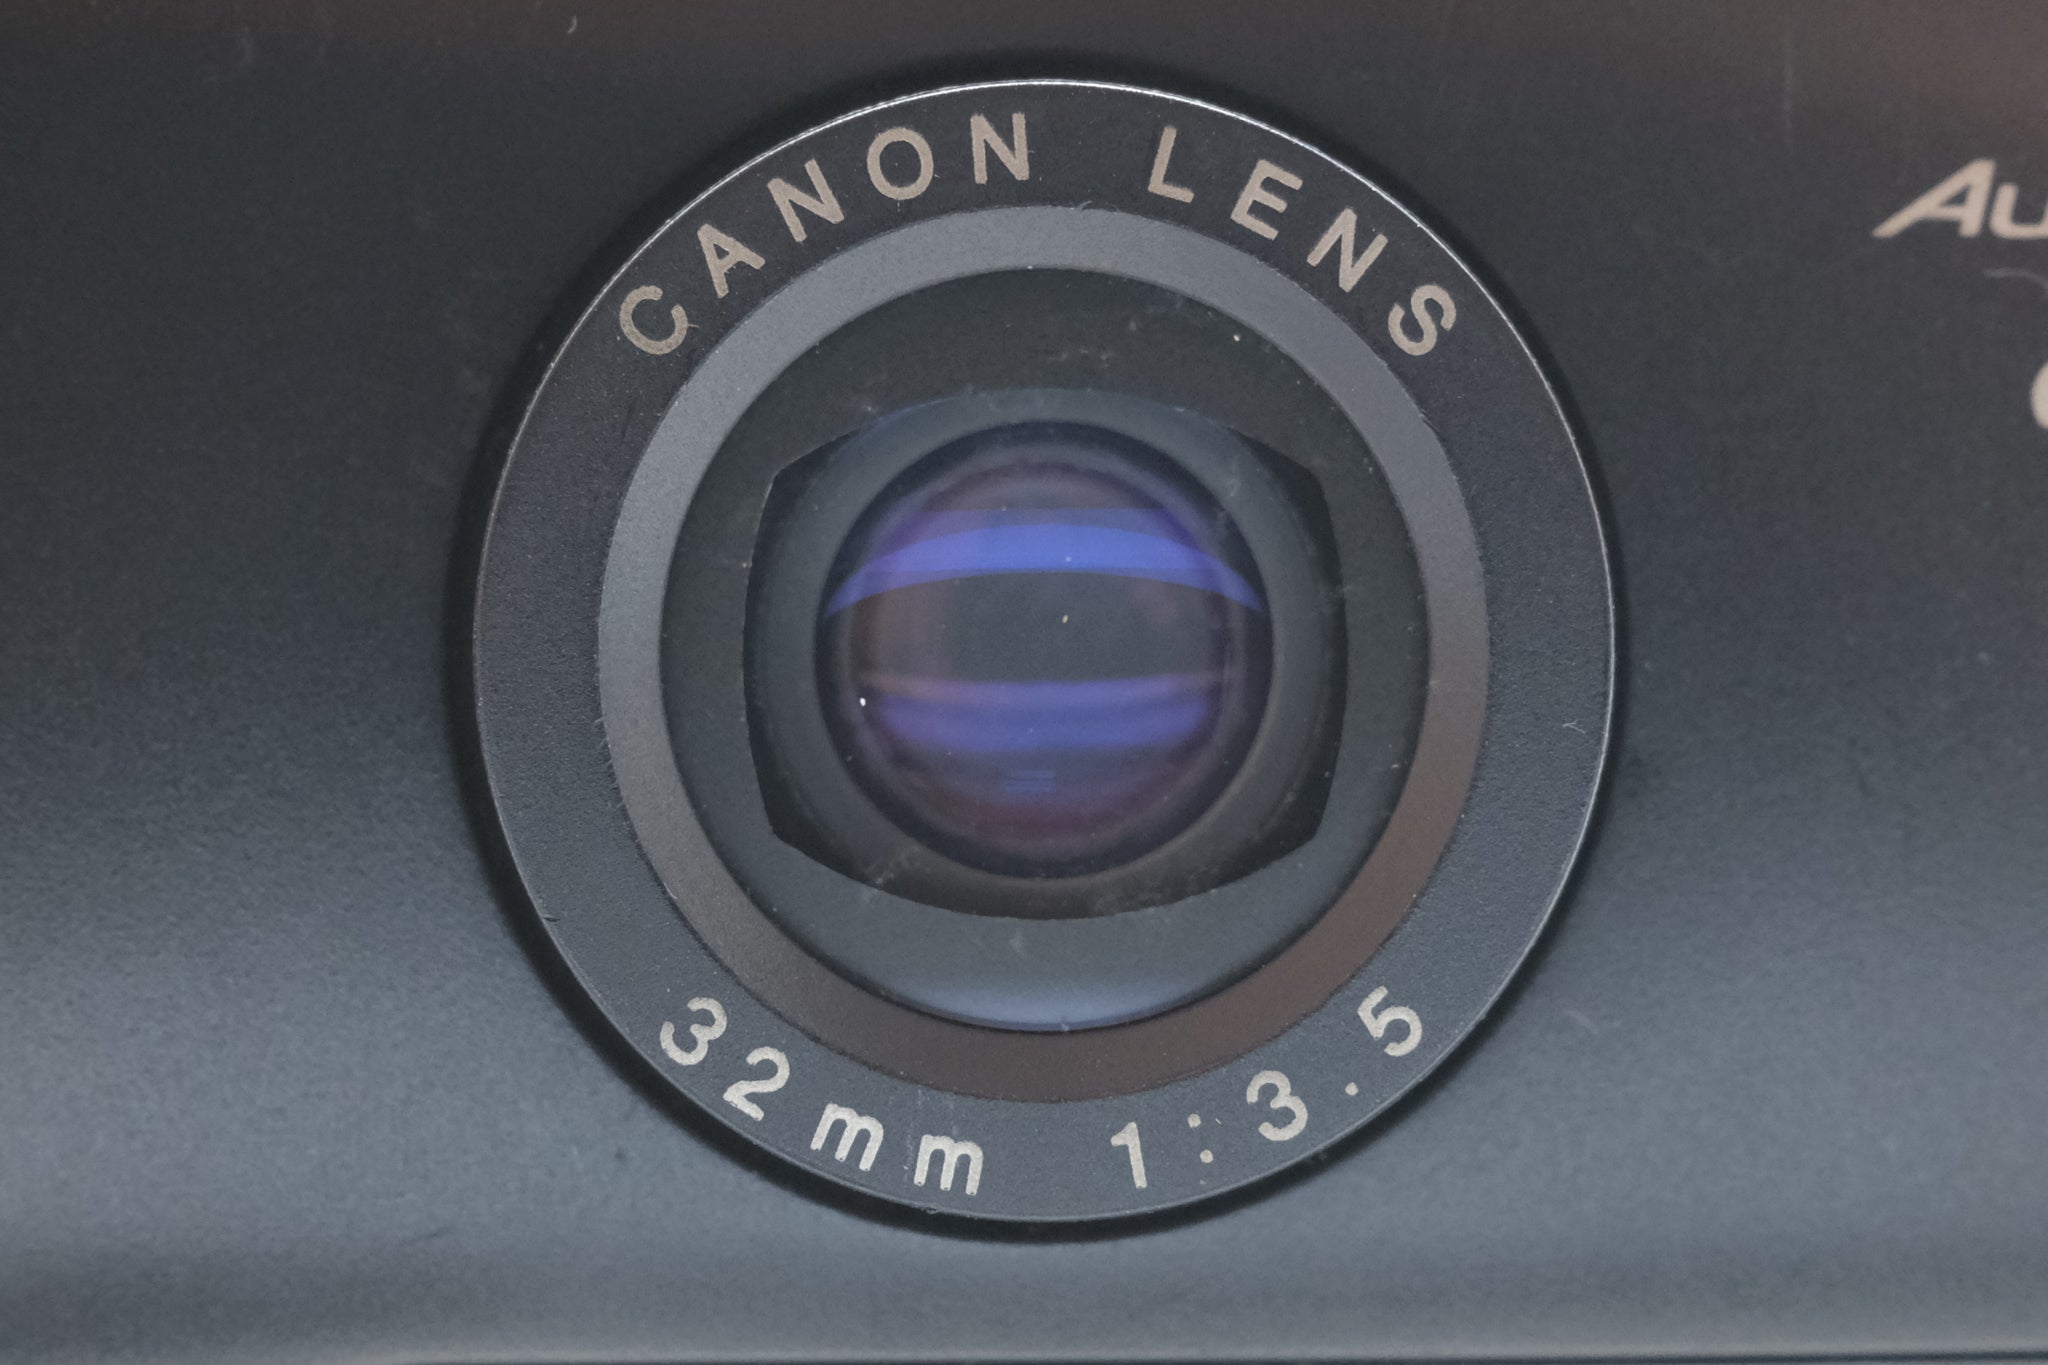 Canon Autoboy F - Rare - Great Cond